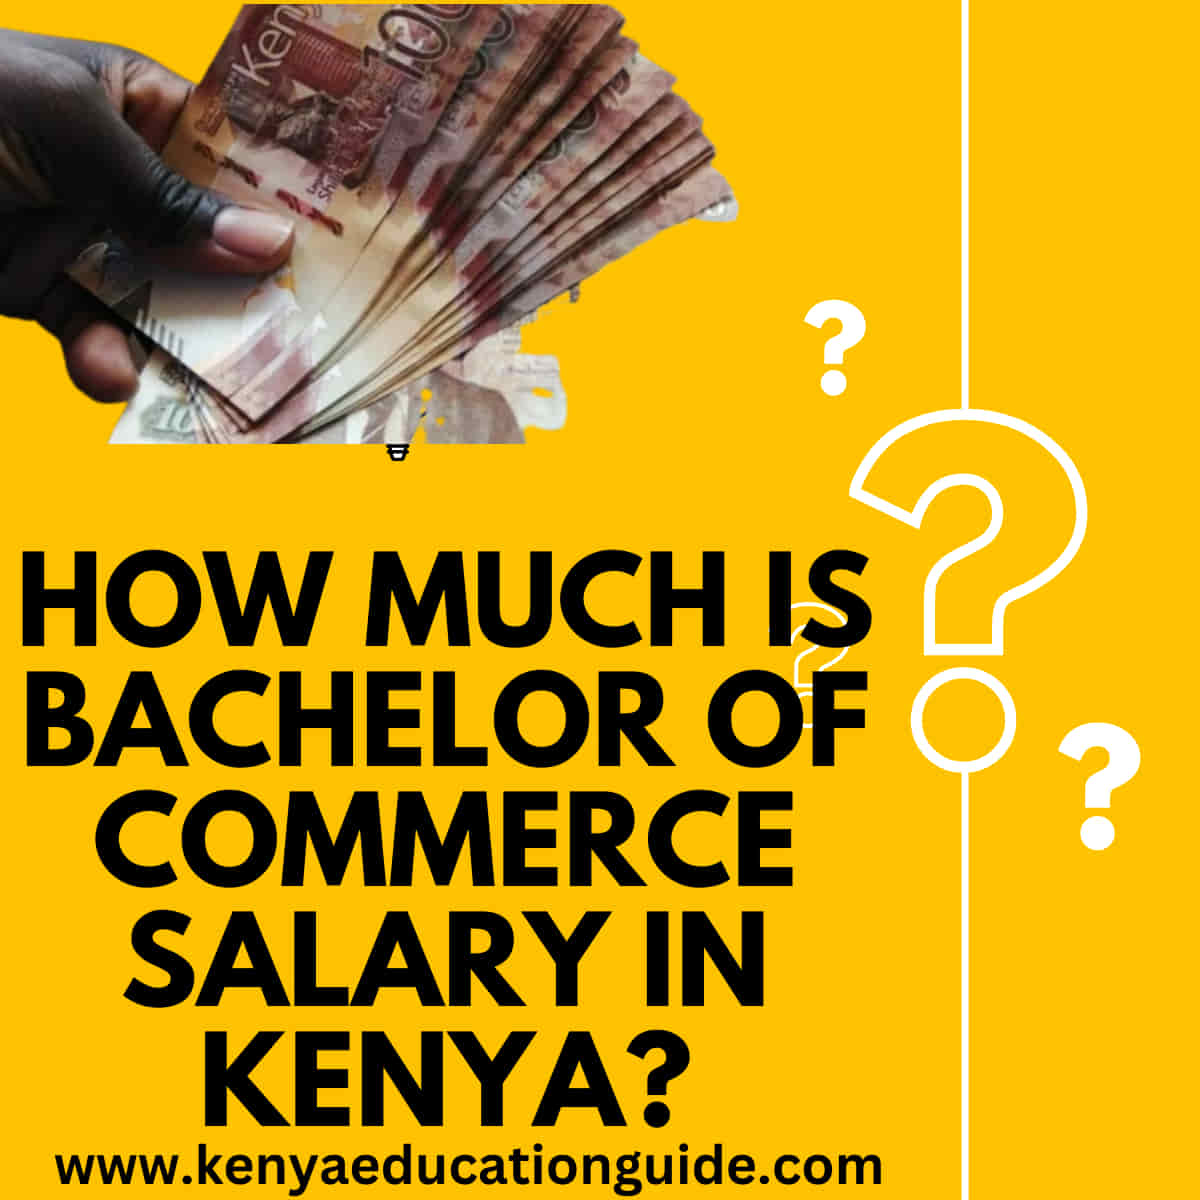 Bachelor of commerce salary in Kenya